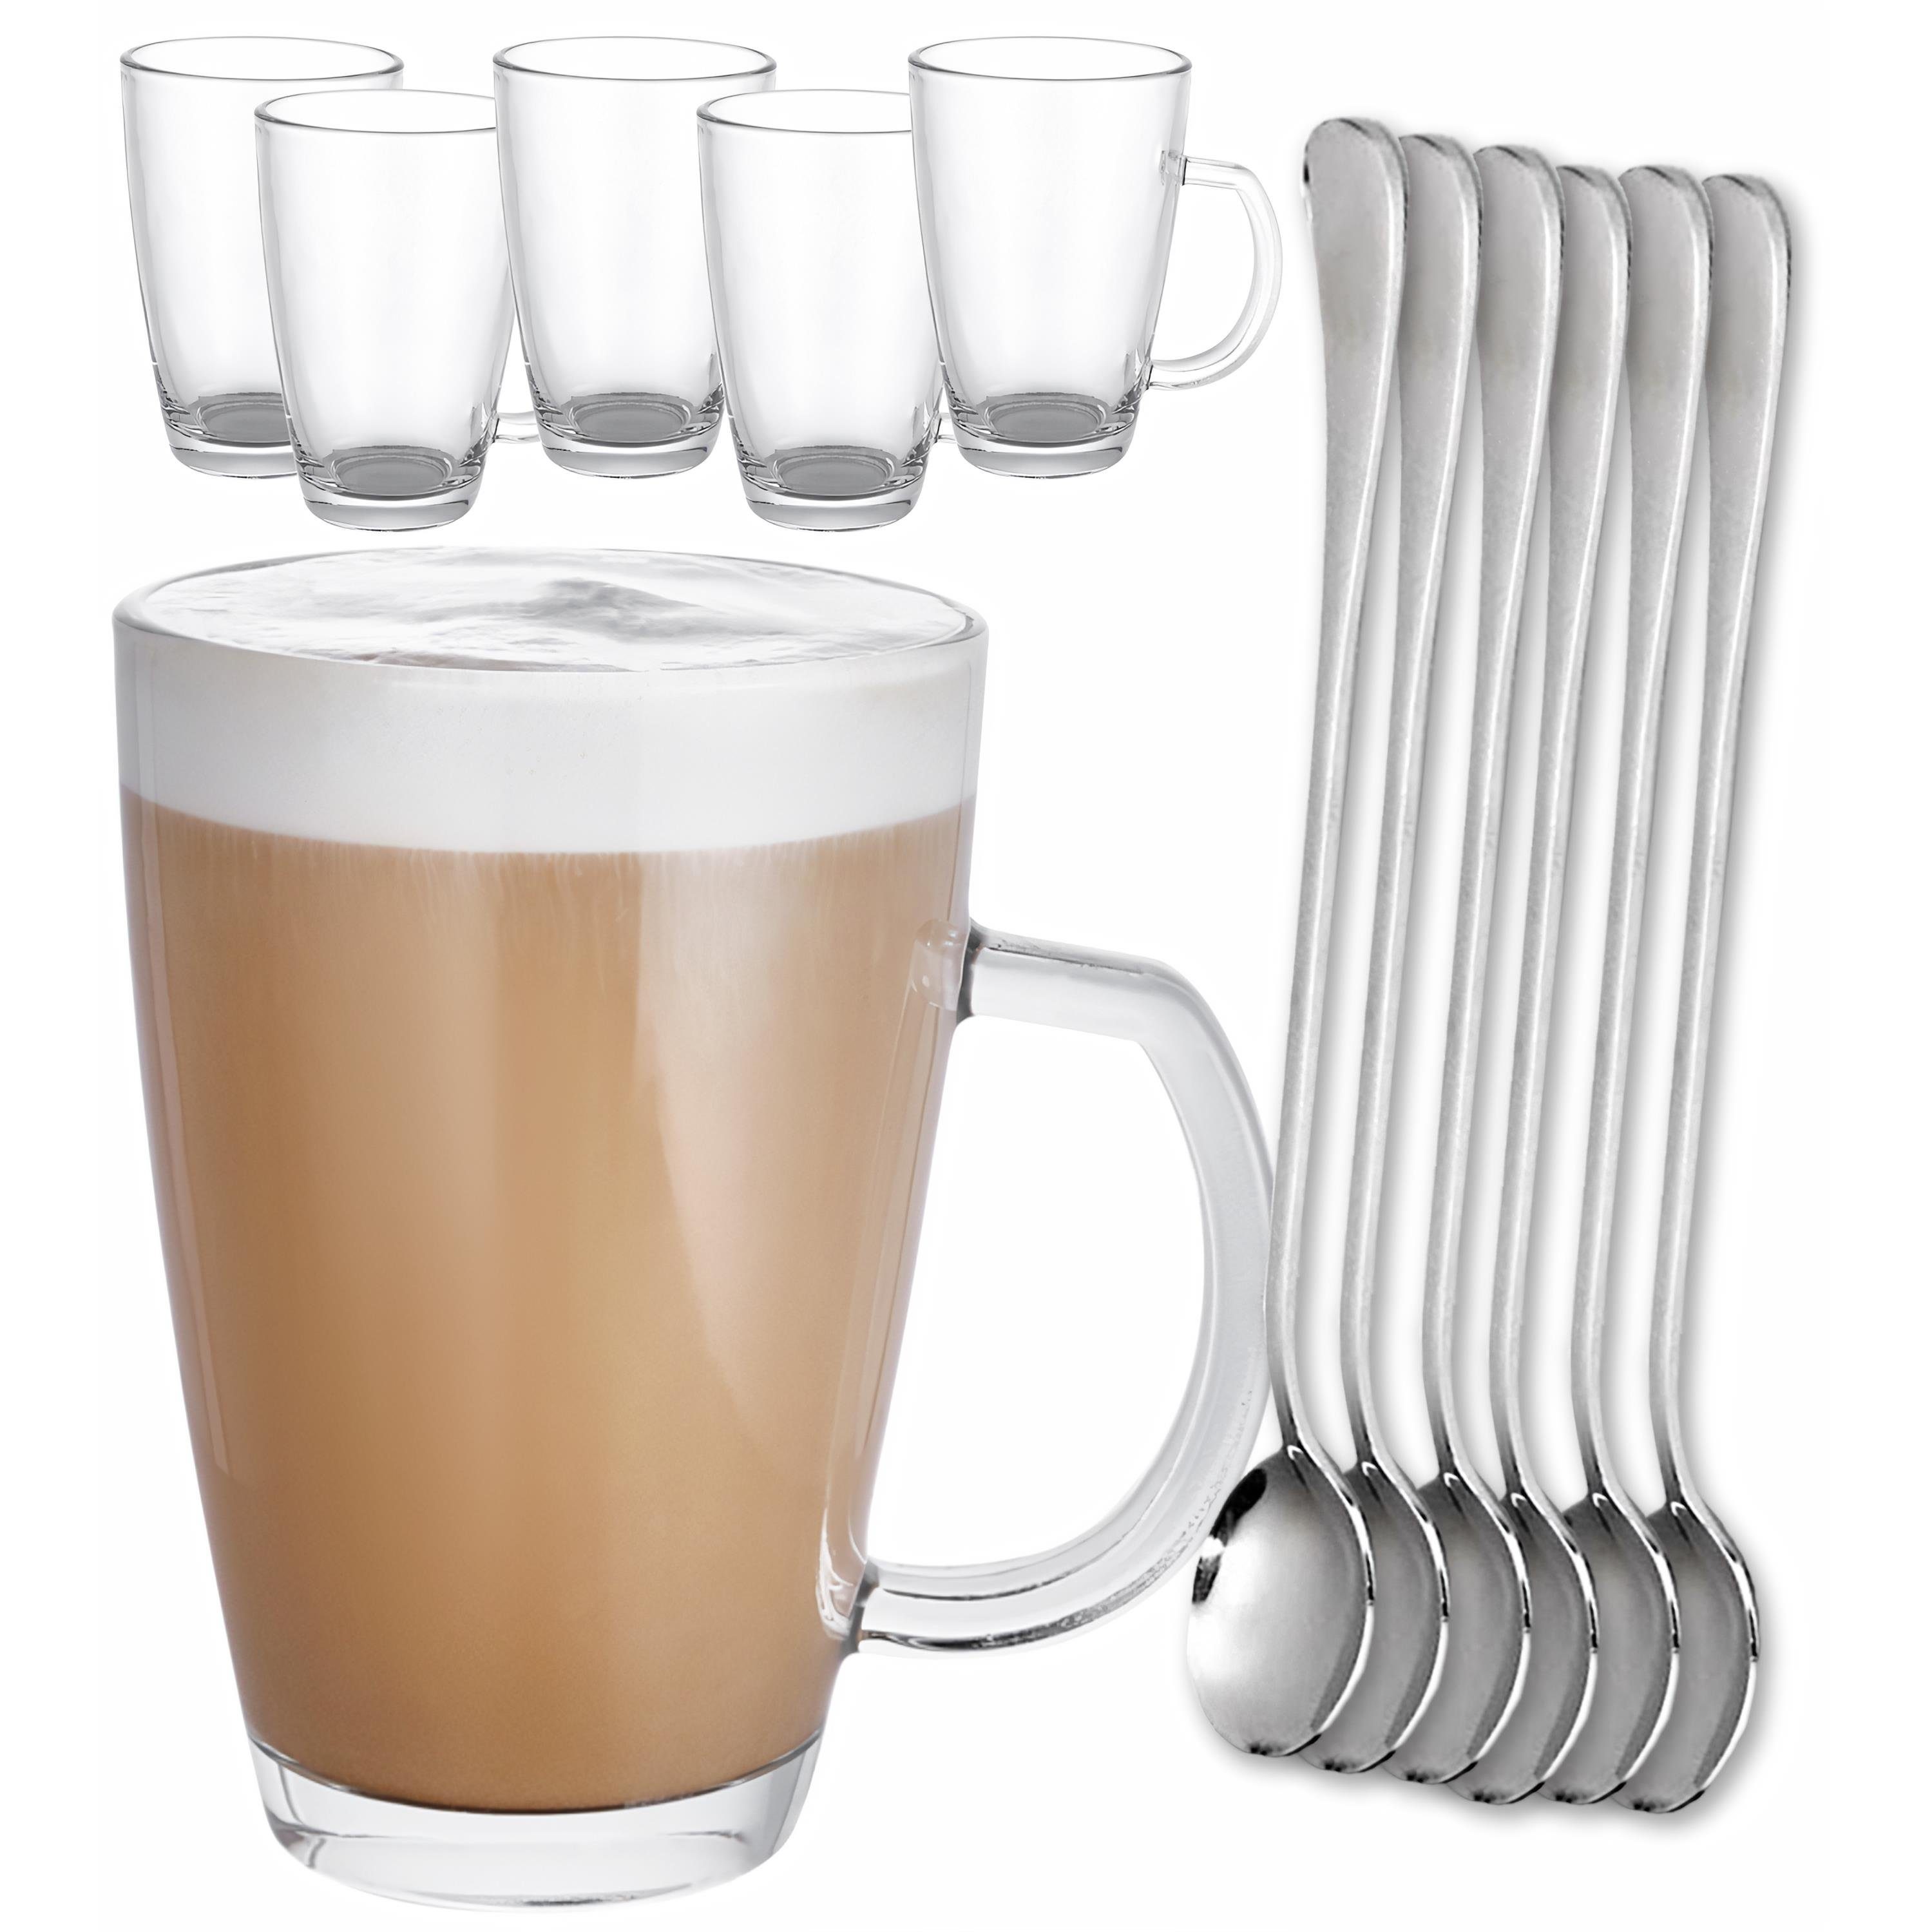 Cosumy Latte-Macchiato-Tasse »6 Latte Macchiato Tassen mit Löffel«, Glas, 6er  Latte Macchiato Gläser Set mit Henkel und Löffel - 300ml - Hält lange warm  online kaufen | OTTO